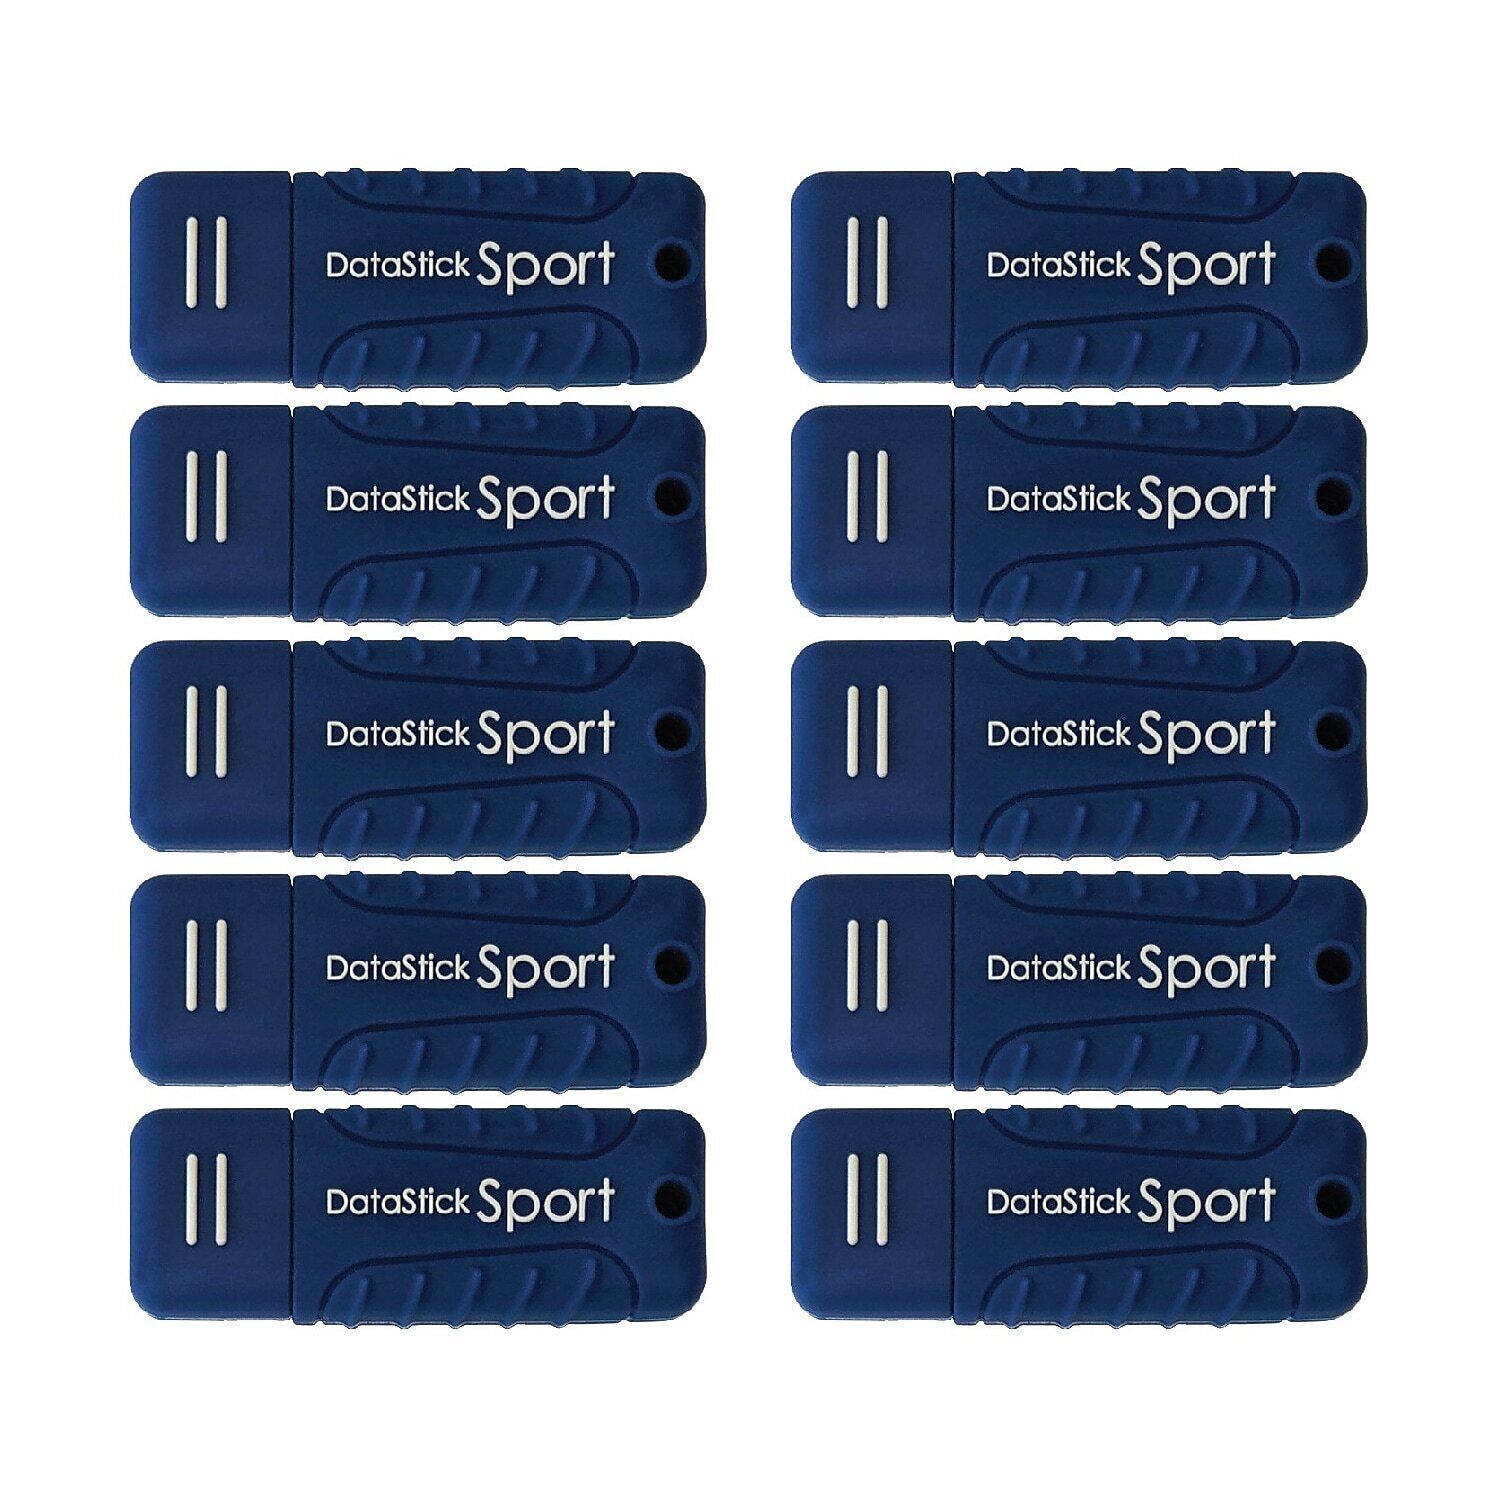 Centon DataStick Sport 64GB USB 3.0 Type A Flash Drive Blue (S1-U3W2-64G-10B)